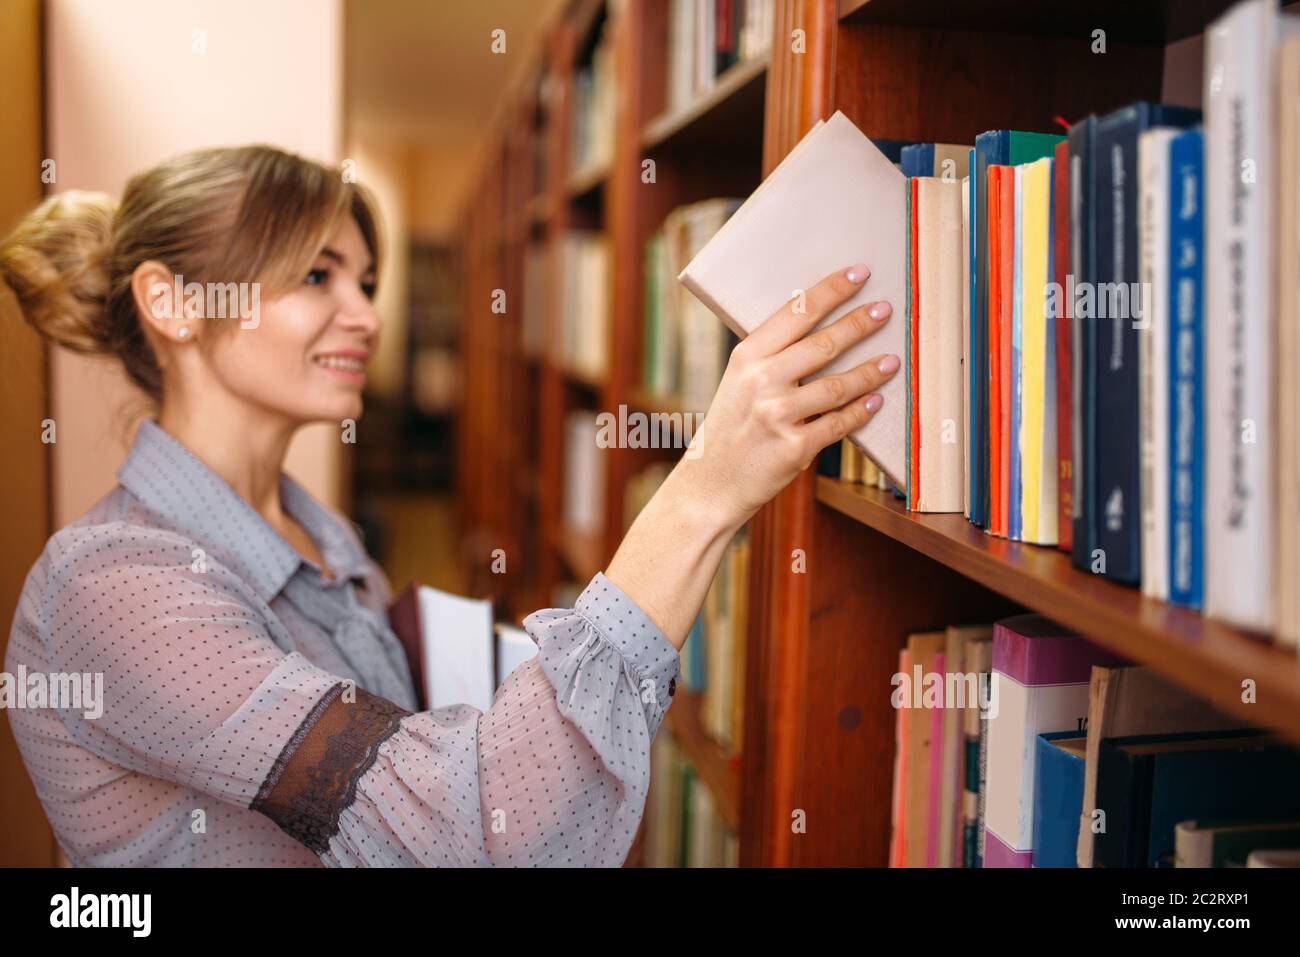 Два друга взяли в библиотеке одинаковые. Девушка в библиотеке. Книга человек. Девушка достает книгу с полки. В библиотеке библиотекарша.